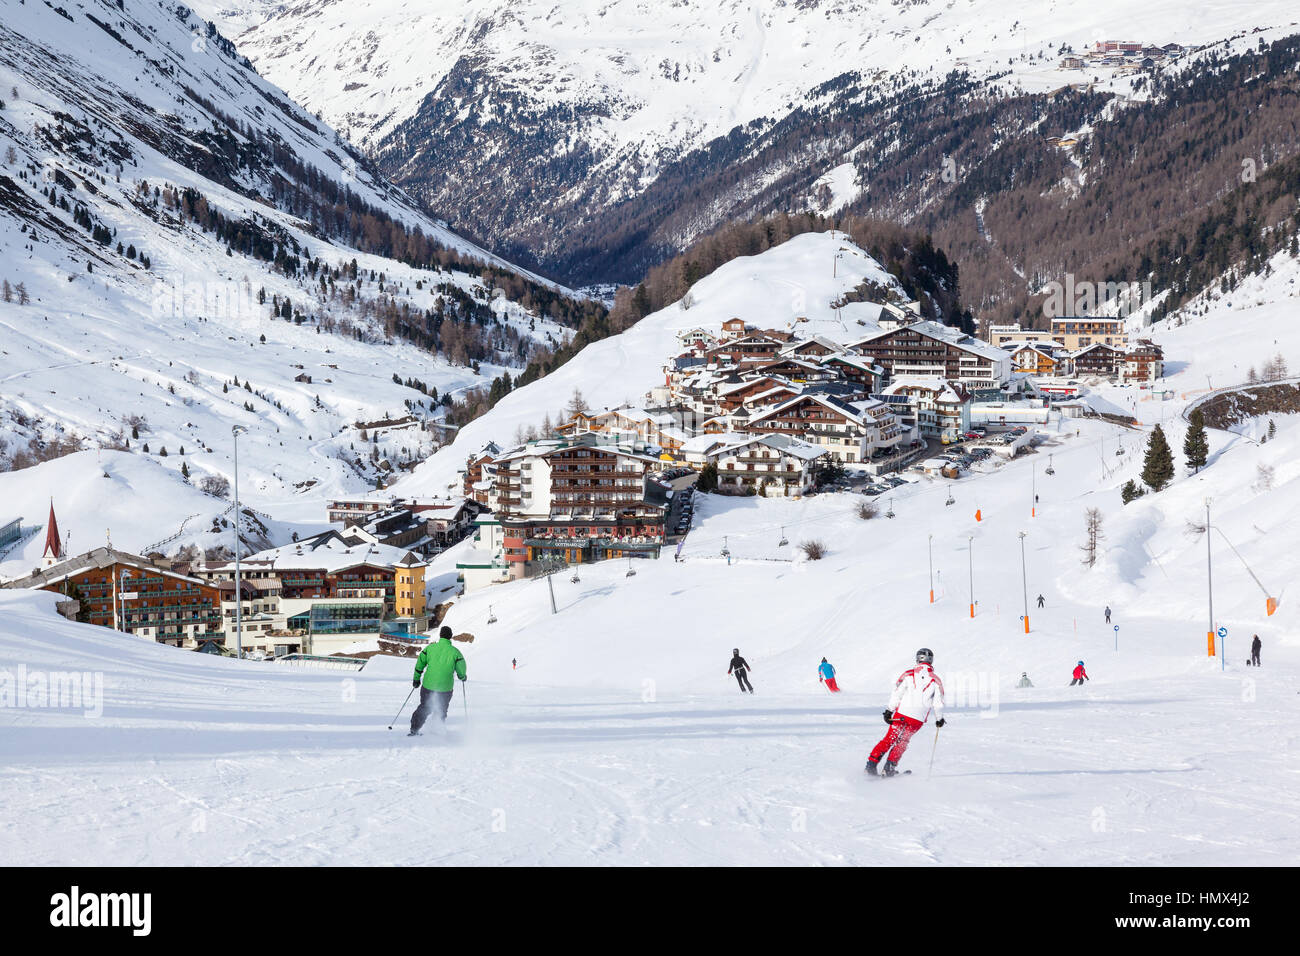 OBERGURGL, Österreich - März, 16: Menschen Skifahren auf der Piste in Obergurgl, Österreich am 16. März 2013. Dieses Hotel liegt im Ötztal Alpen auf einer Höhe von 1 Stockfoto